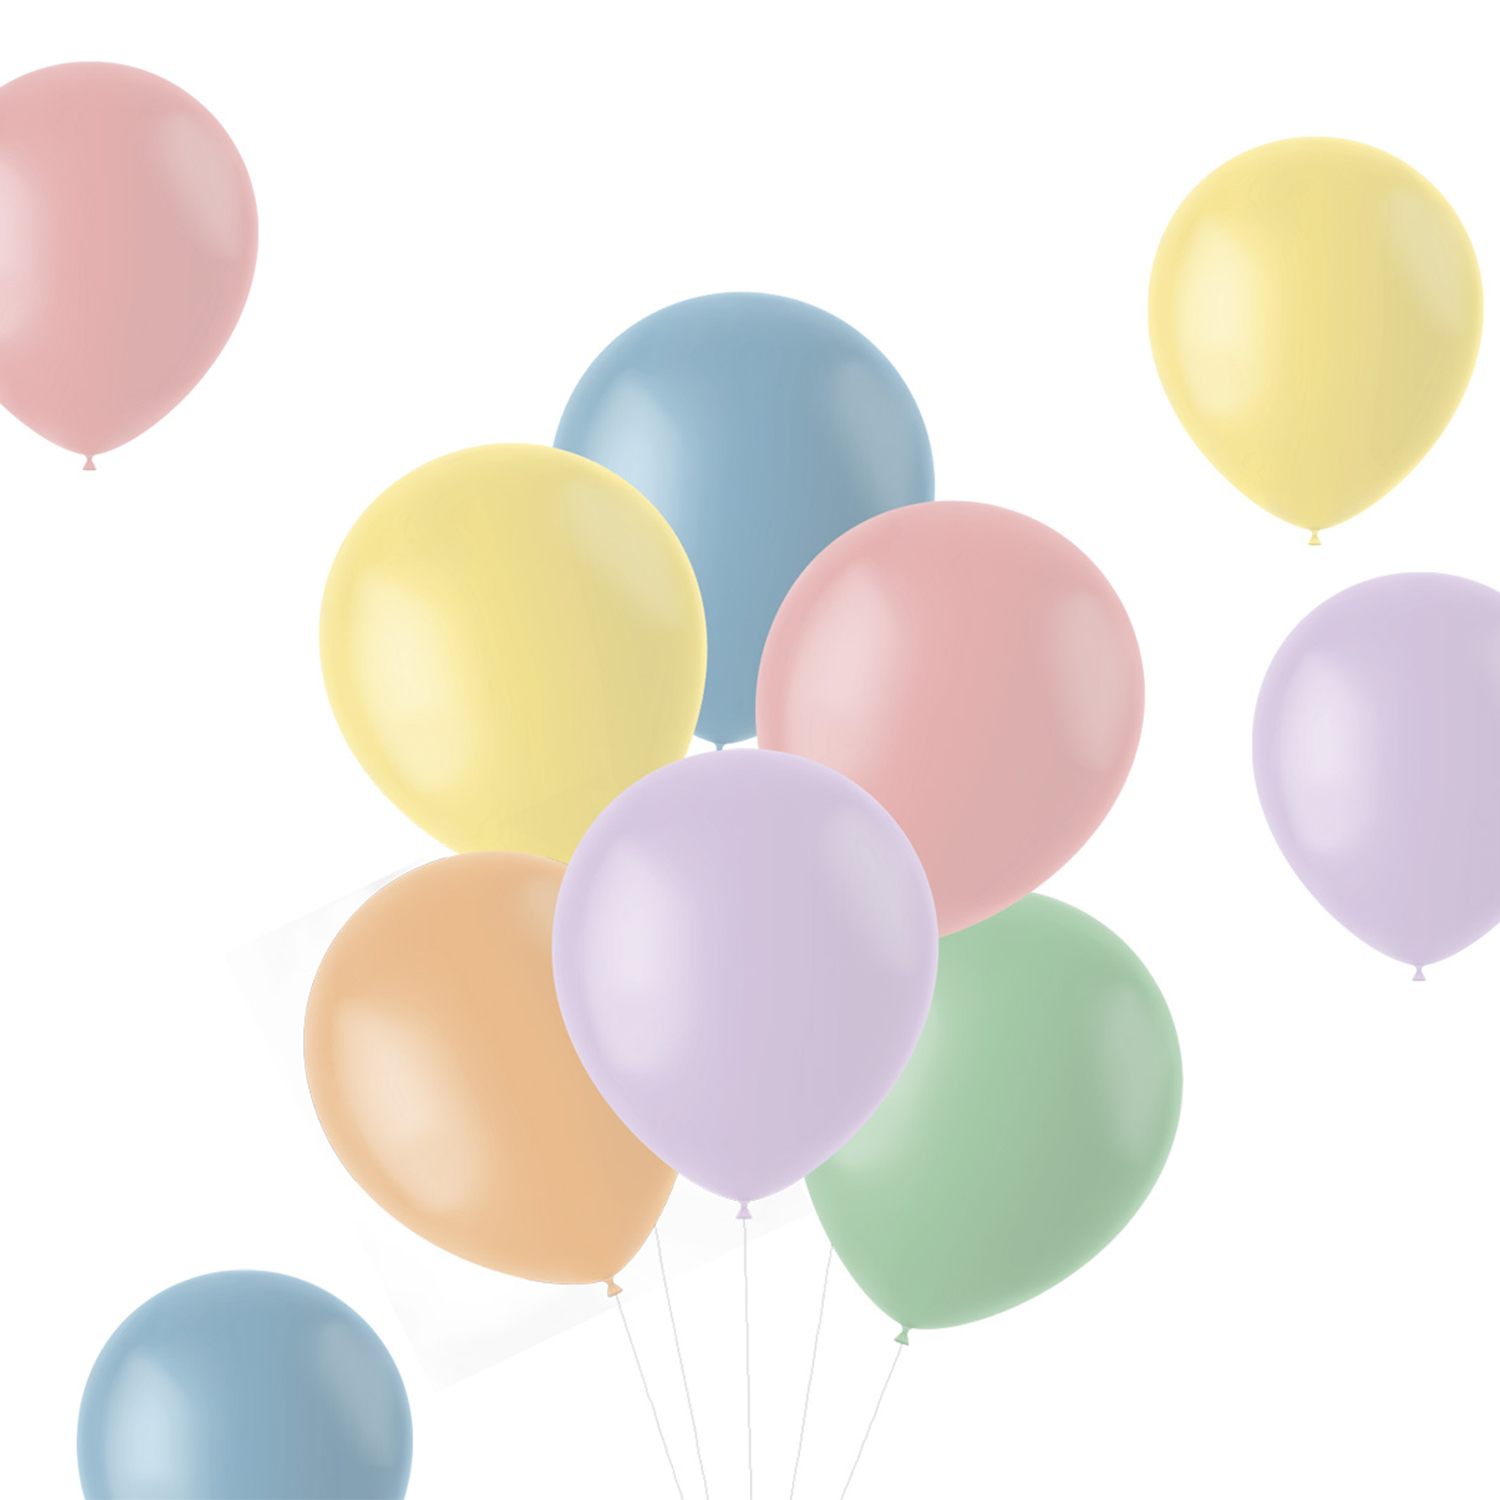 NEU Latex-Luftballons matt, 33cm, Pastelltöne bunt gemischt, 10 Stück